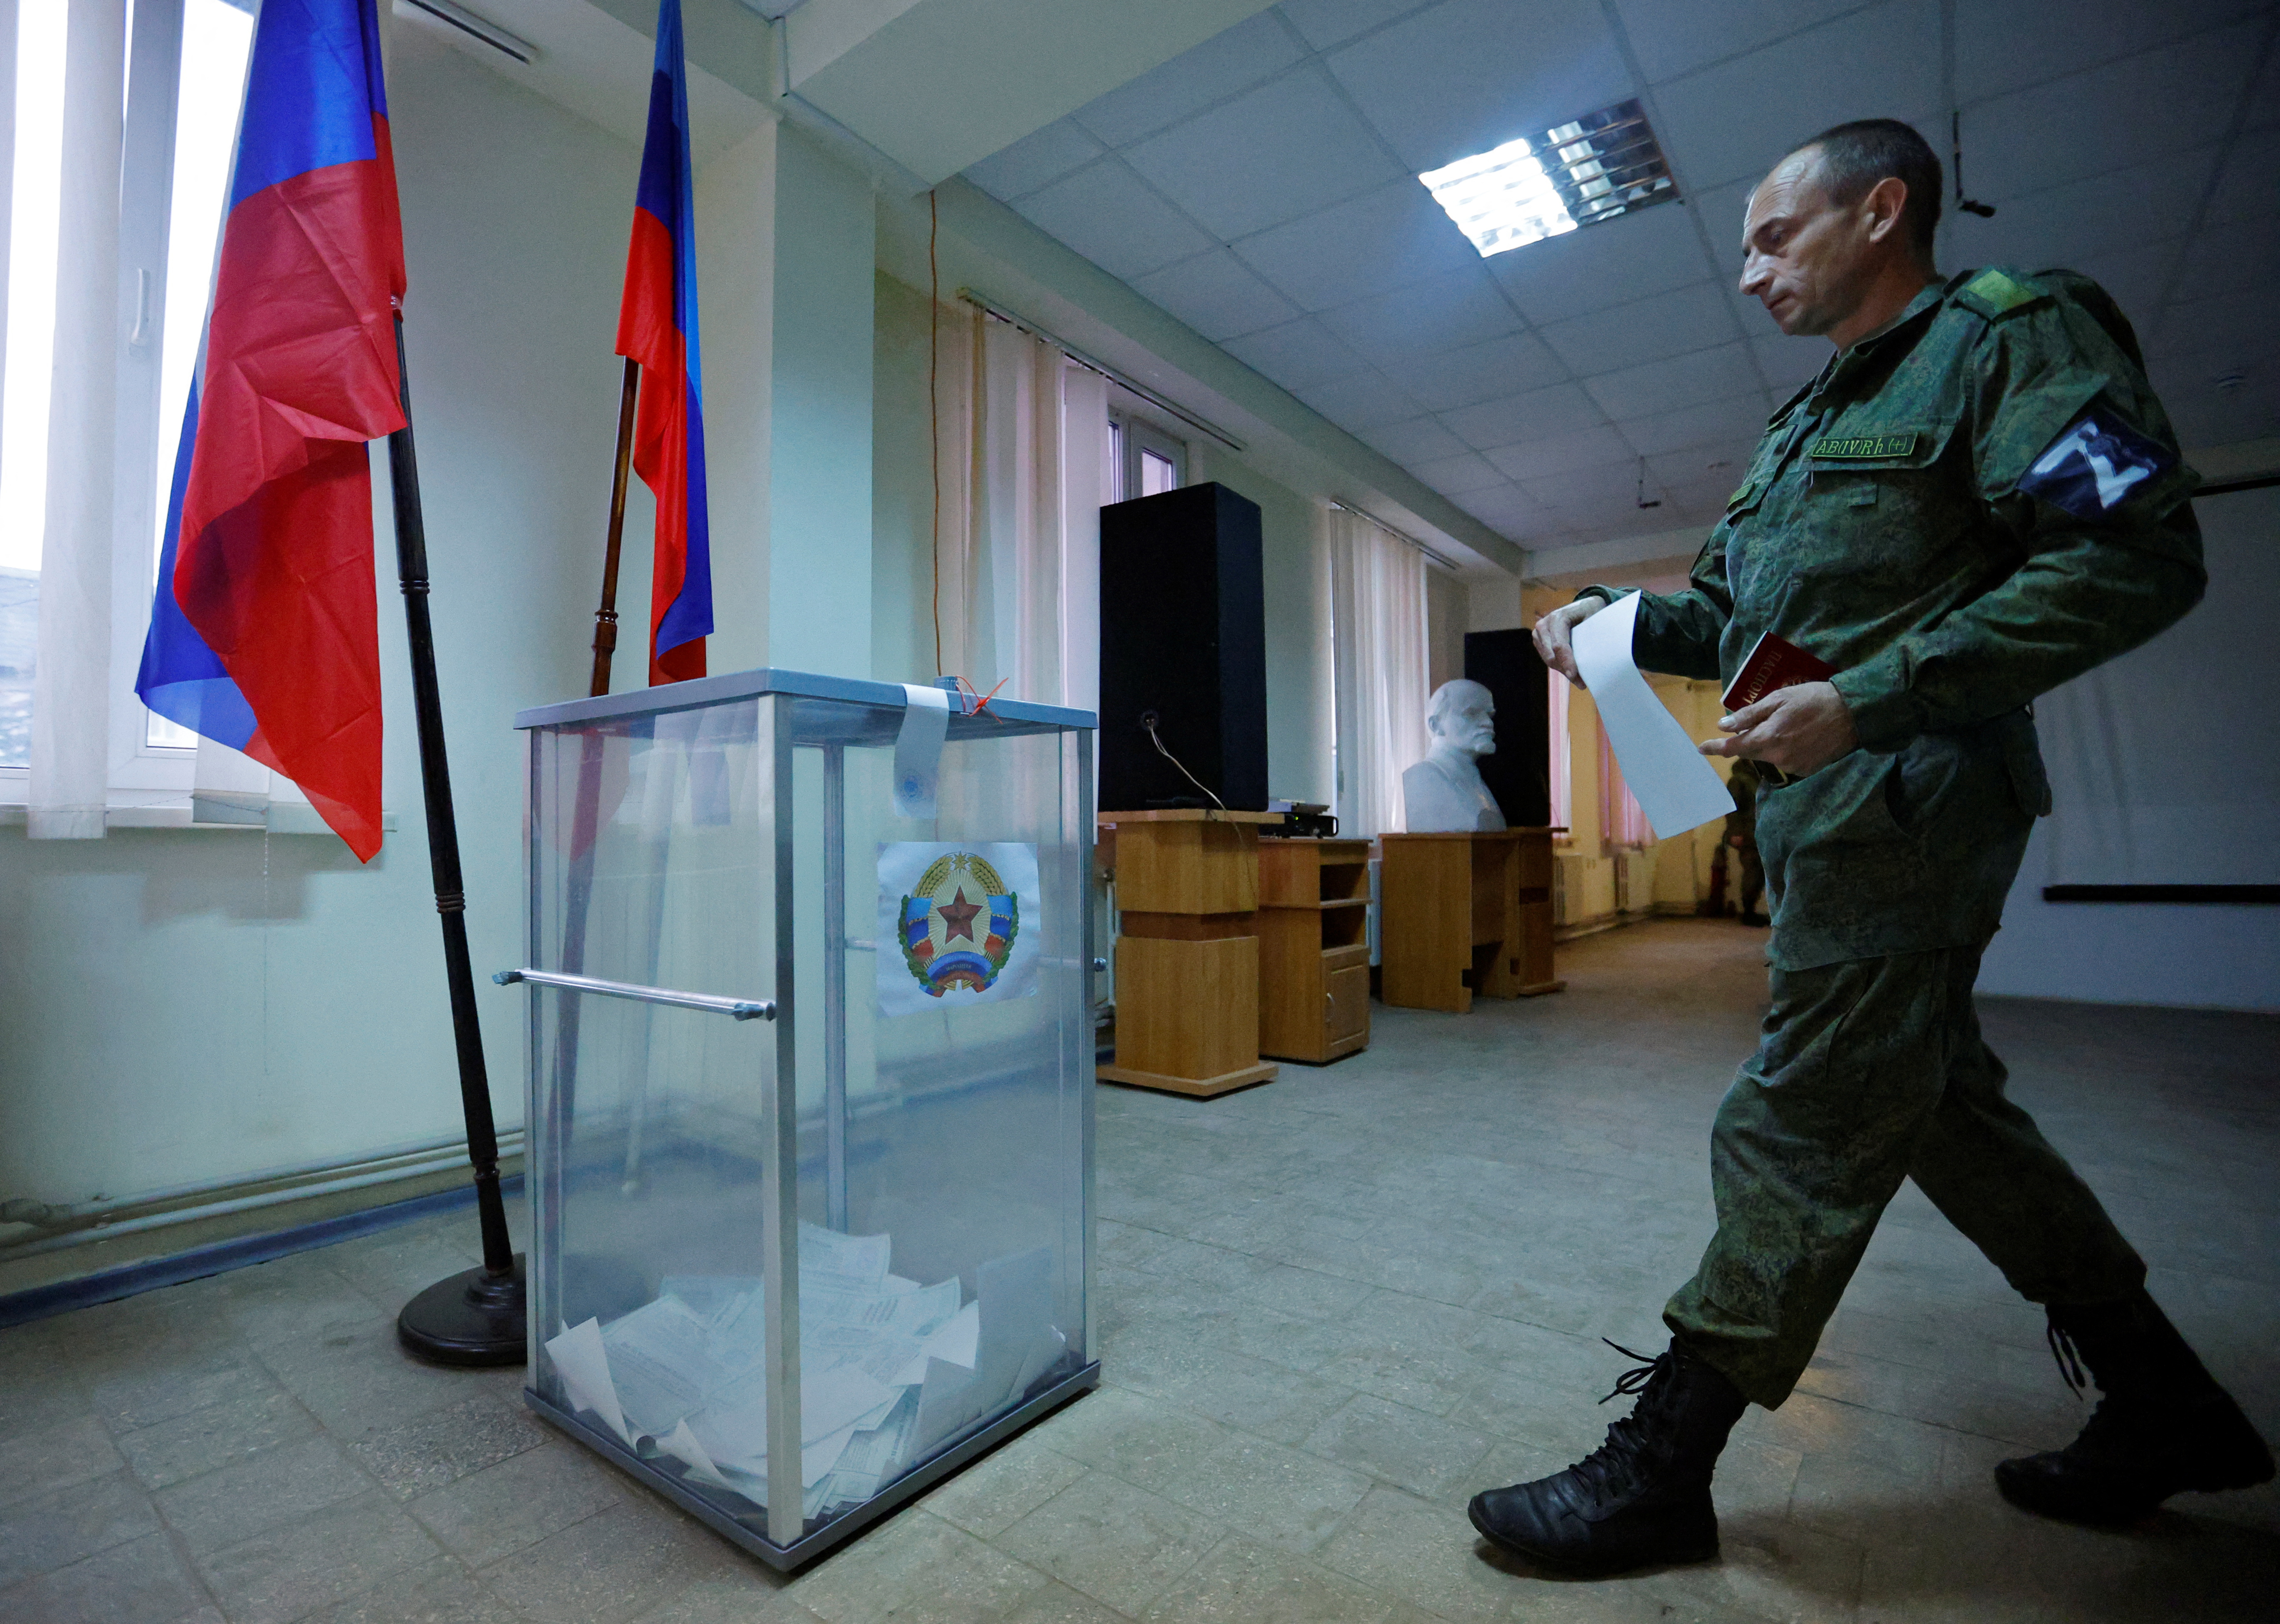 Dziś poznano wyniki referendów zarządzonych przez Moskwę, w których oddano pozytywne głosy za chęcią aneksji tych terytoriów (REUTERS)